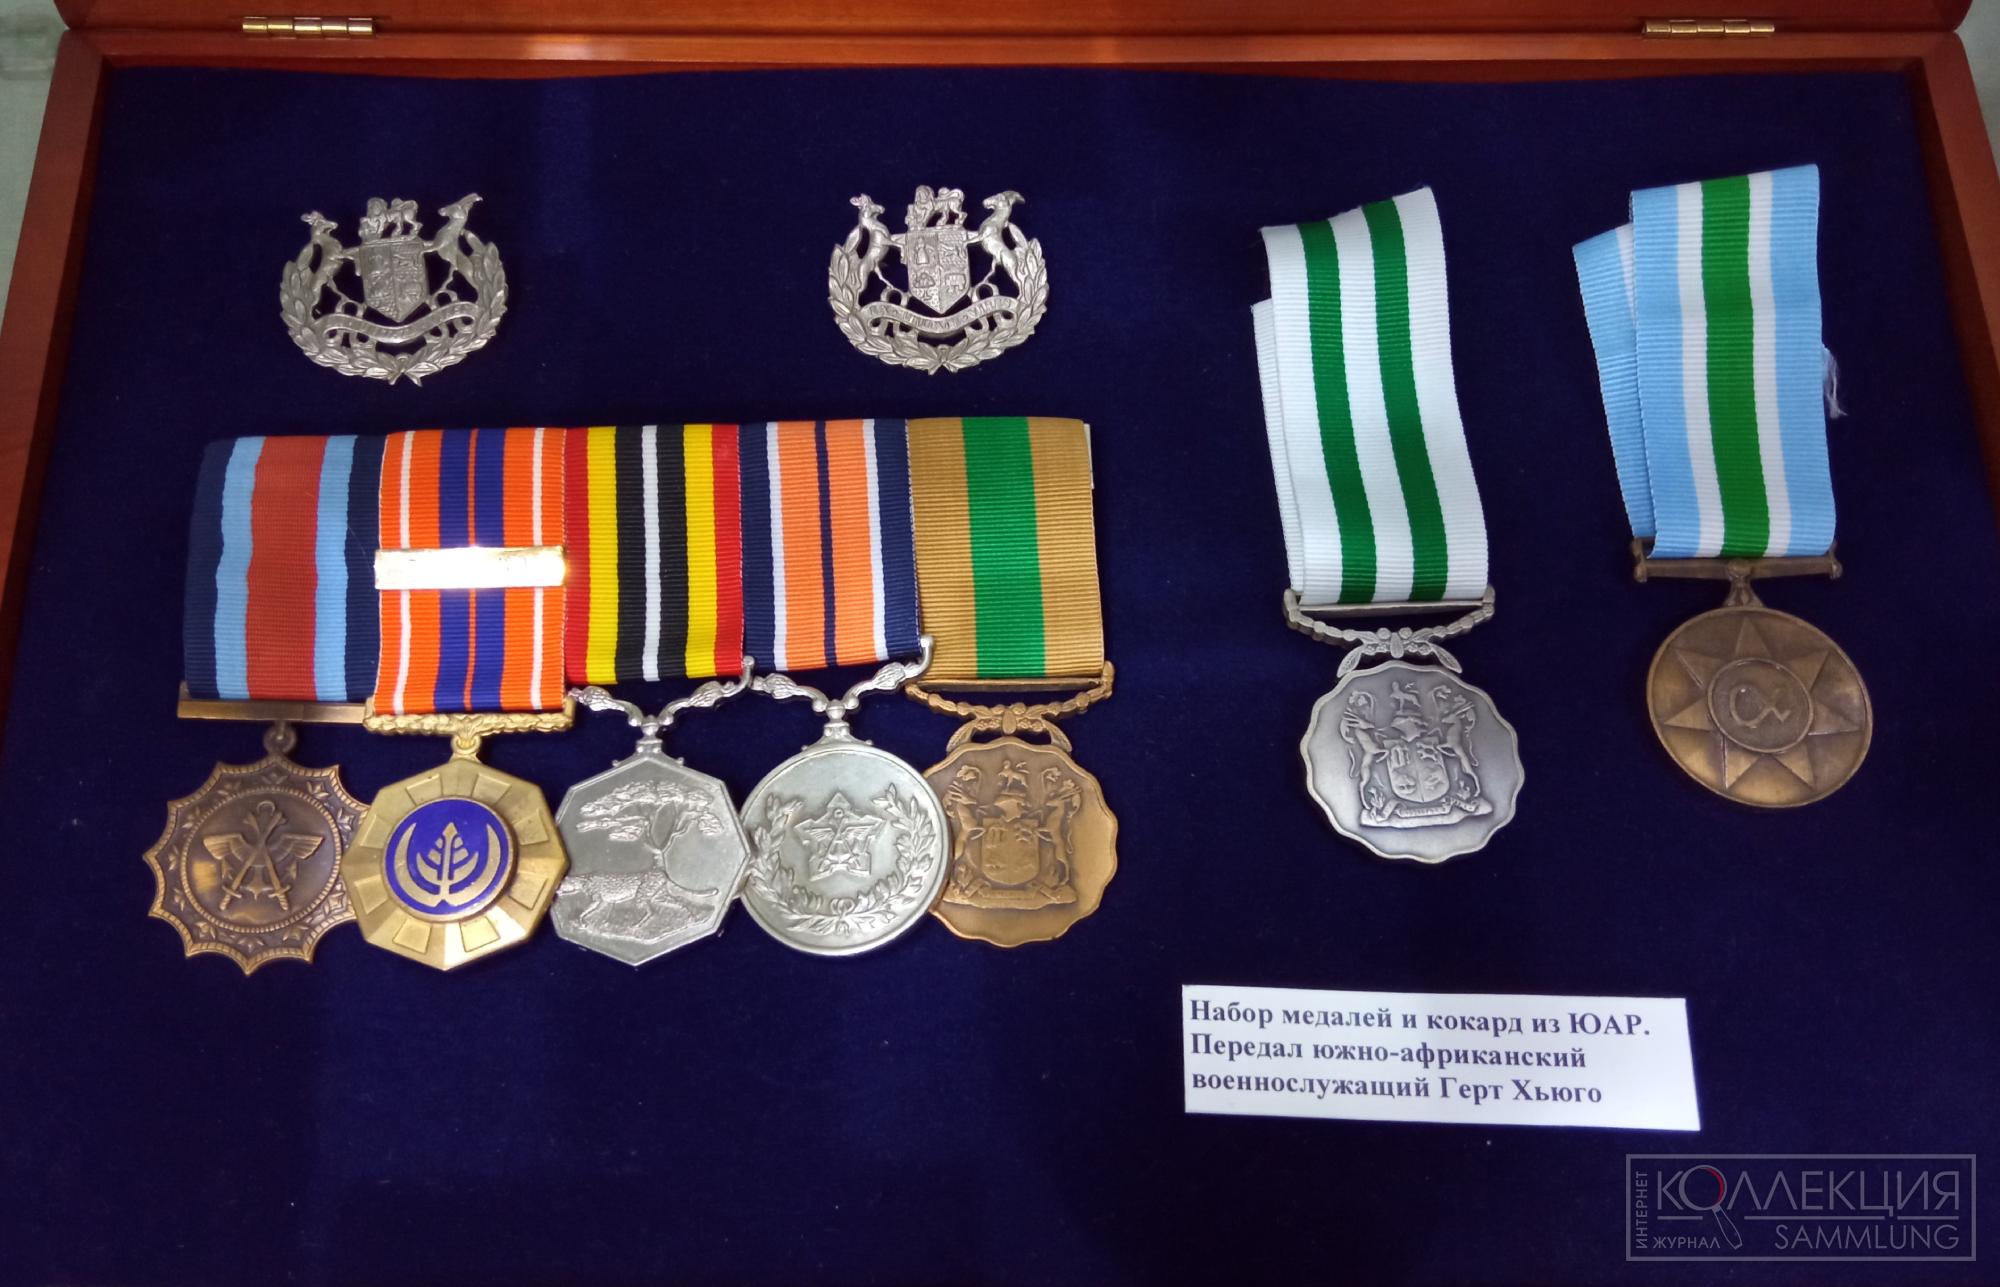 Набор медалей и кокард, переданный военнослужащим ЮАР Гертом Хьюго. Музей Союза ветеранов Анголы